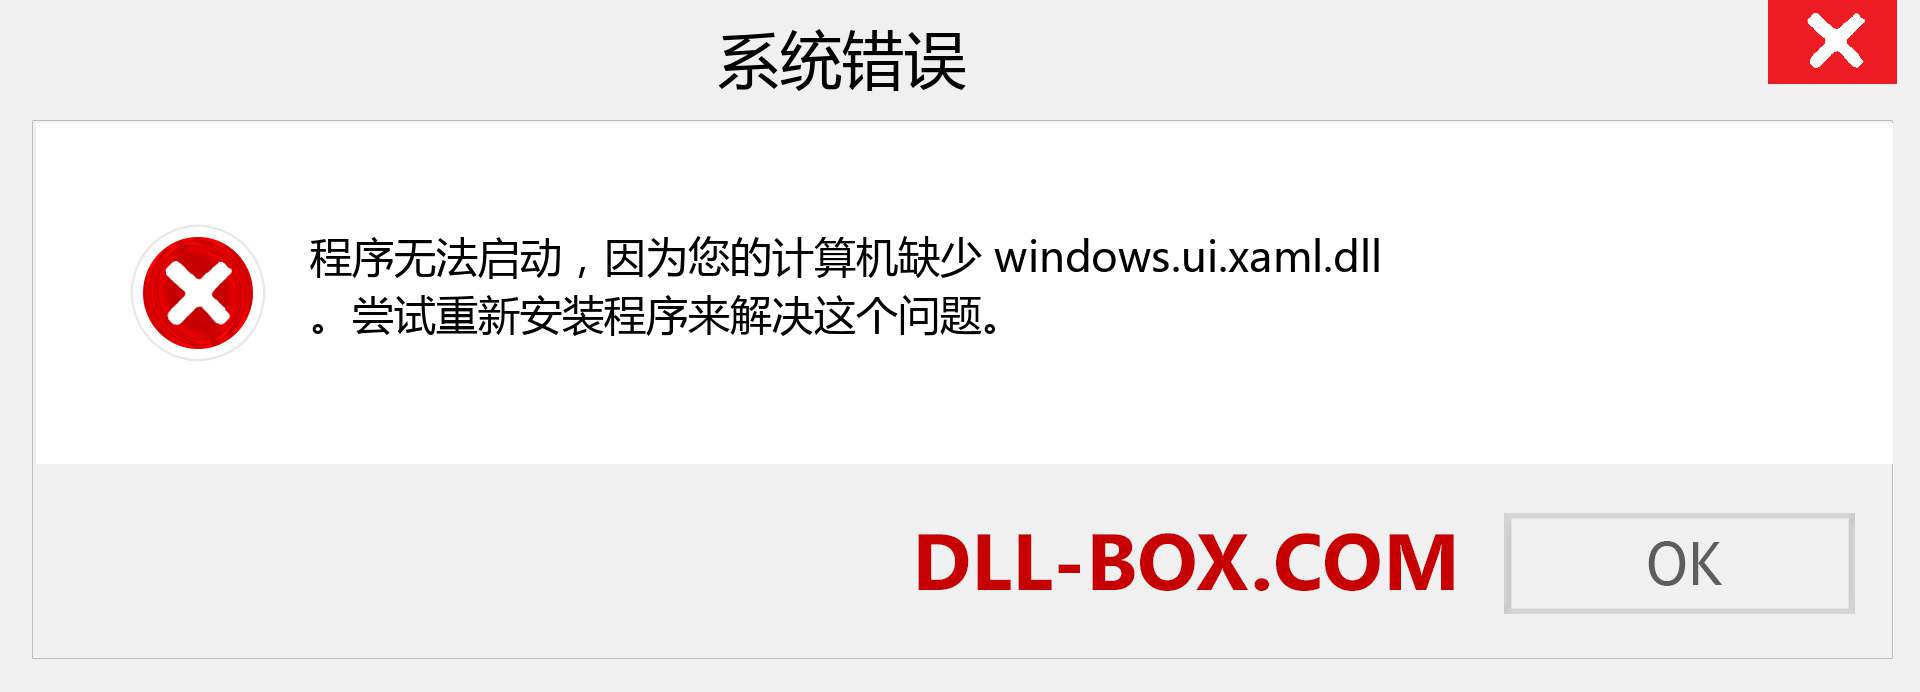 windows.ui.xaml.dll 文件丢失？。 适用于 Windows 7、8、10 的下载 - 修复 Windows、照片、图像上的 windows.ui.xaml dll 丢失错误